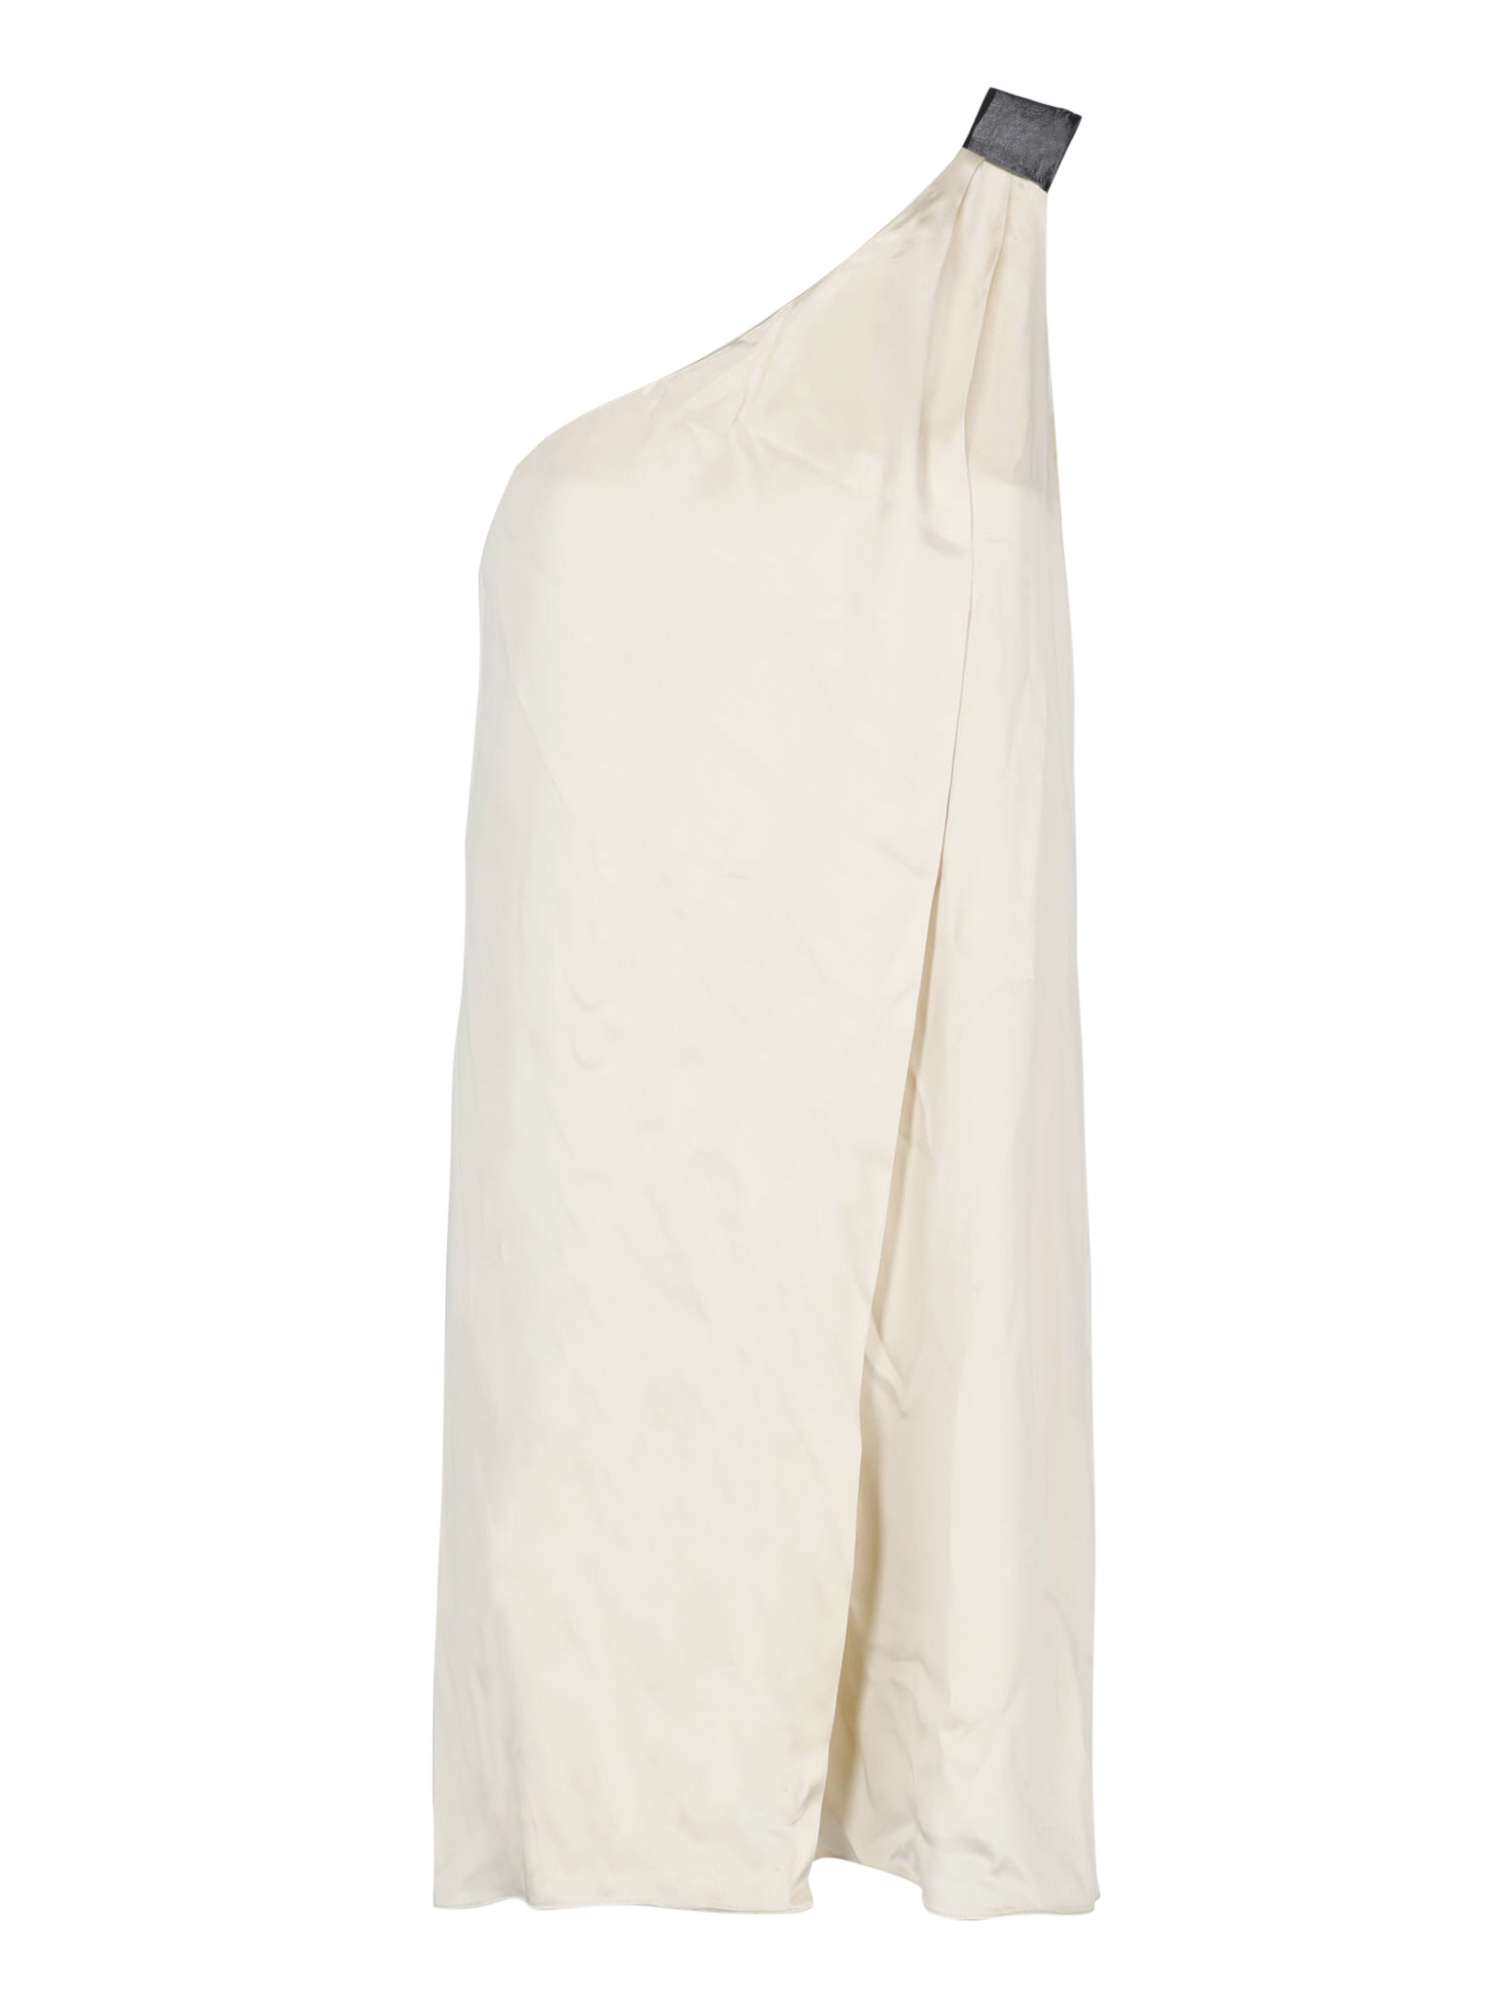 Robes Pour Femme - Alexander Wang - En Silk Beige - Taille:  -